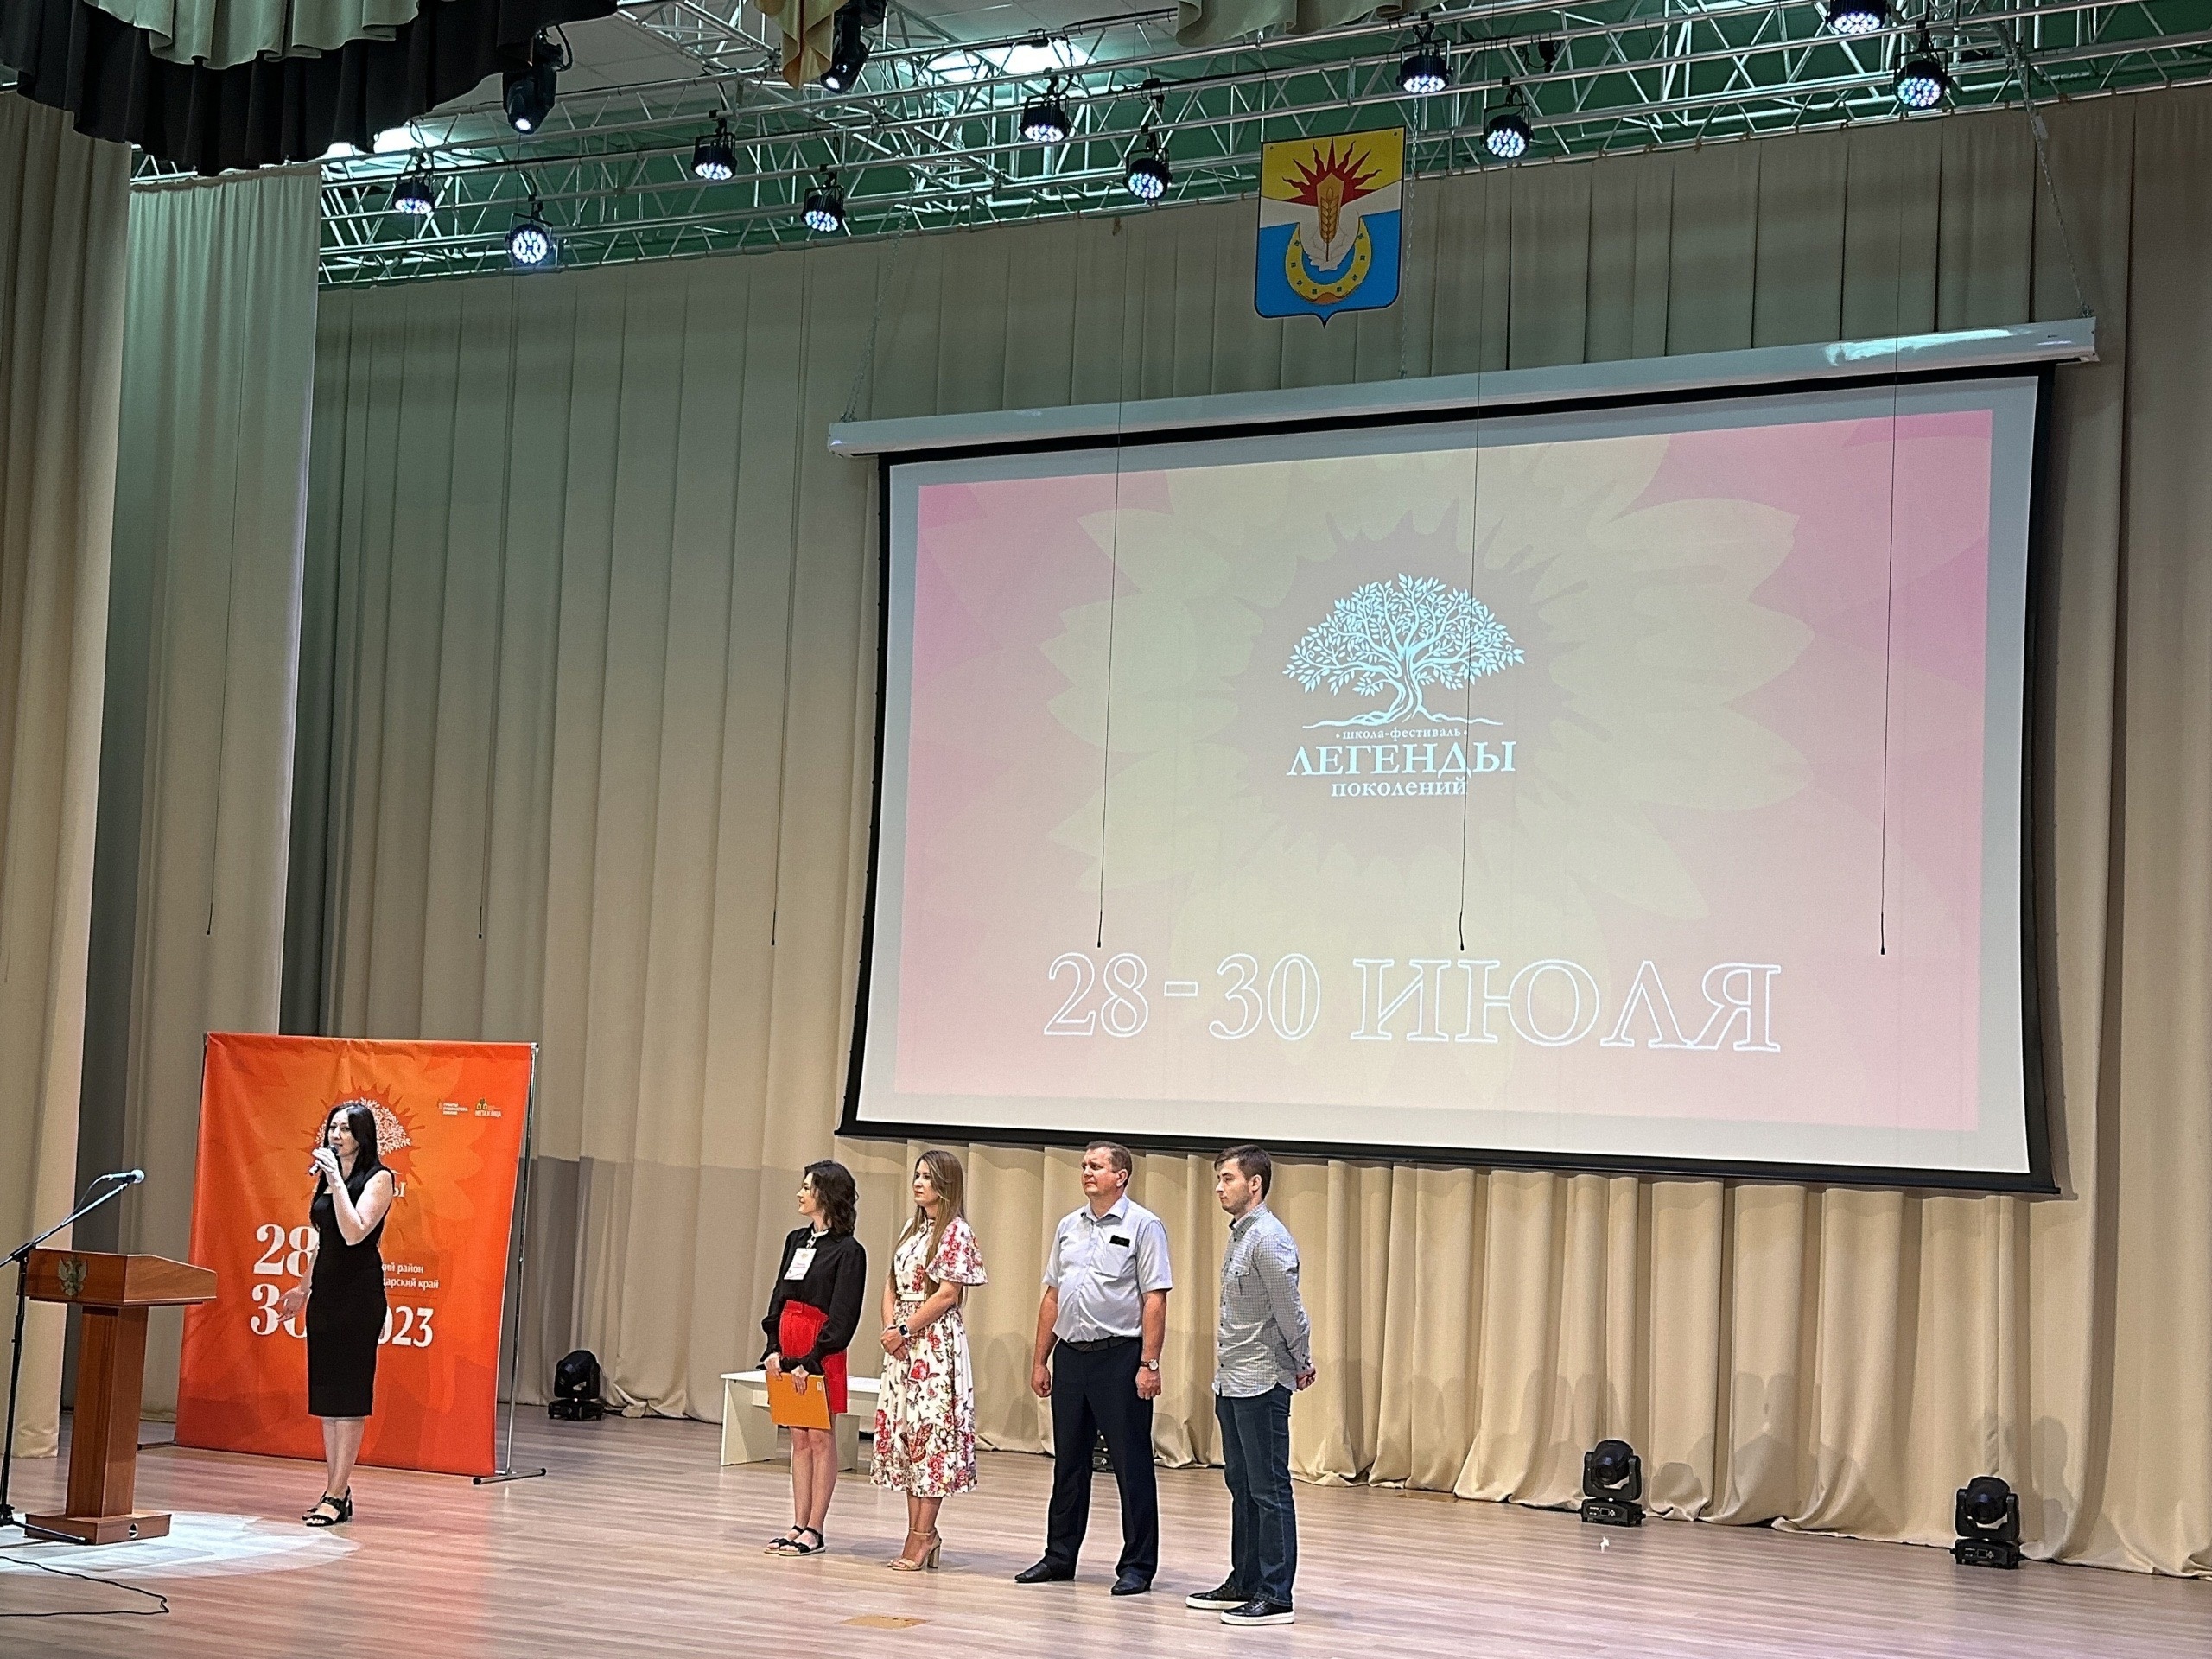 Пресс-секретарь краевого штаба Союза провела мастер-класс на Международном фестивале «Легенды поколений»